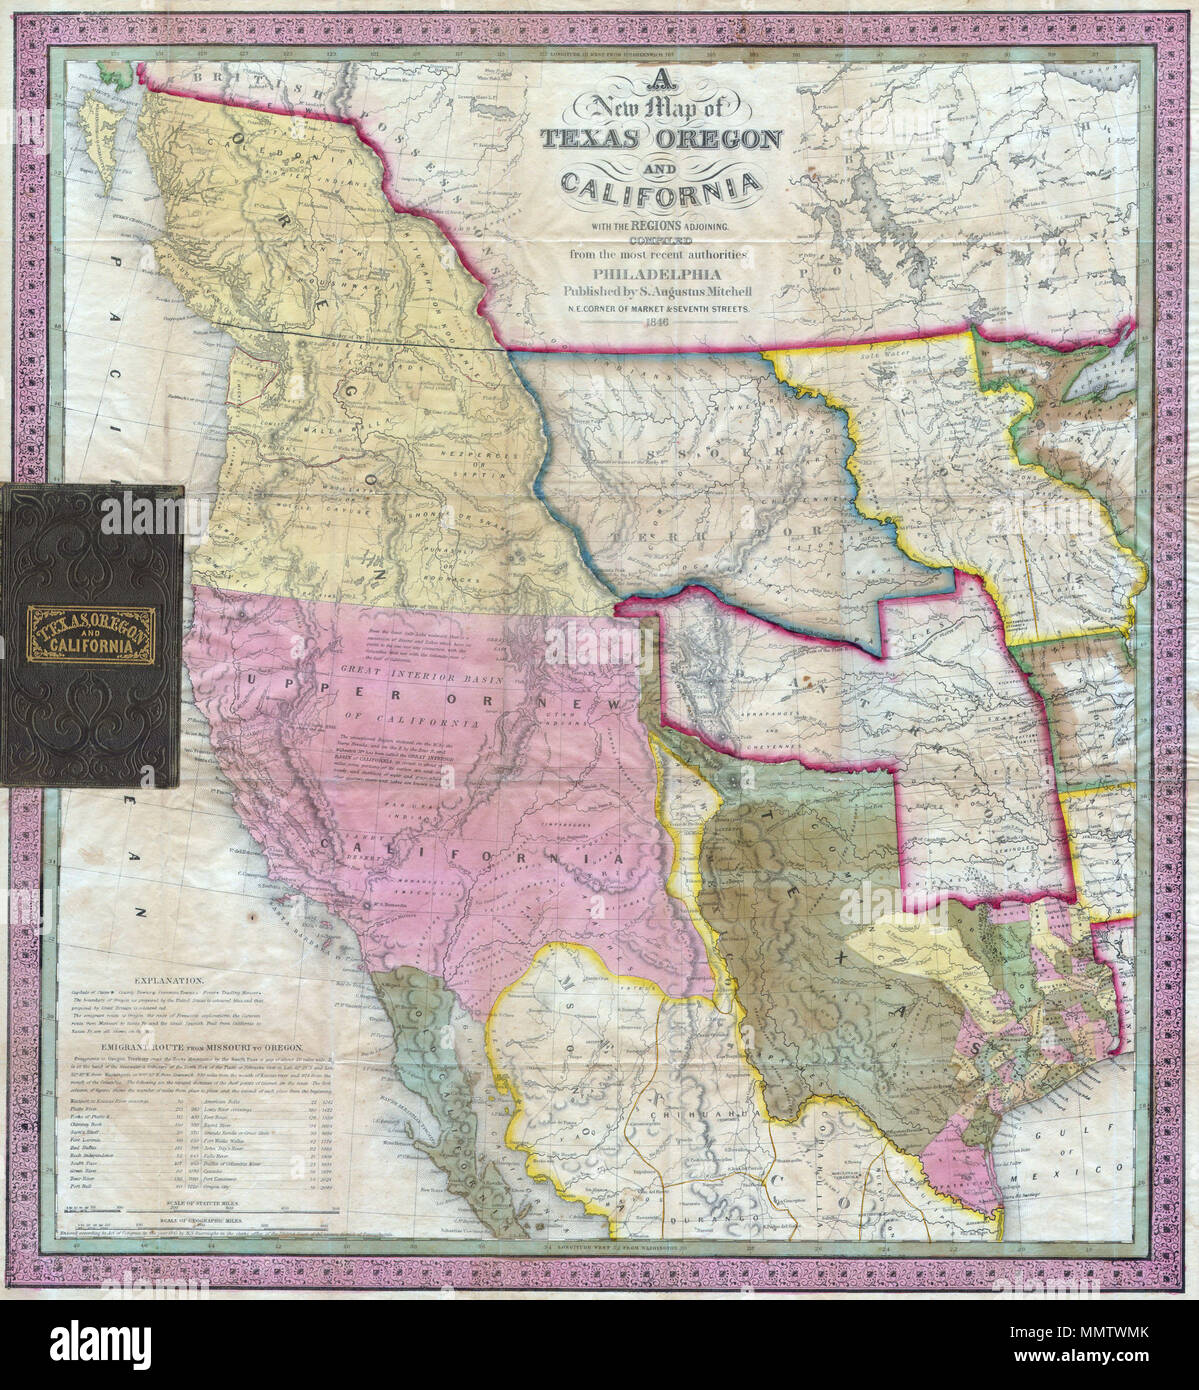 Ingles Un Impresionante Ejemplo De Mitchell S Seminal De Bolsillo 1846 Mapa De Texas Oregon California Missouri Superior De Territorio El Territorio Indio Oklahoma Aunque En Este Ejemplo Incluyendo La Mayor Parte